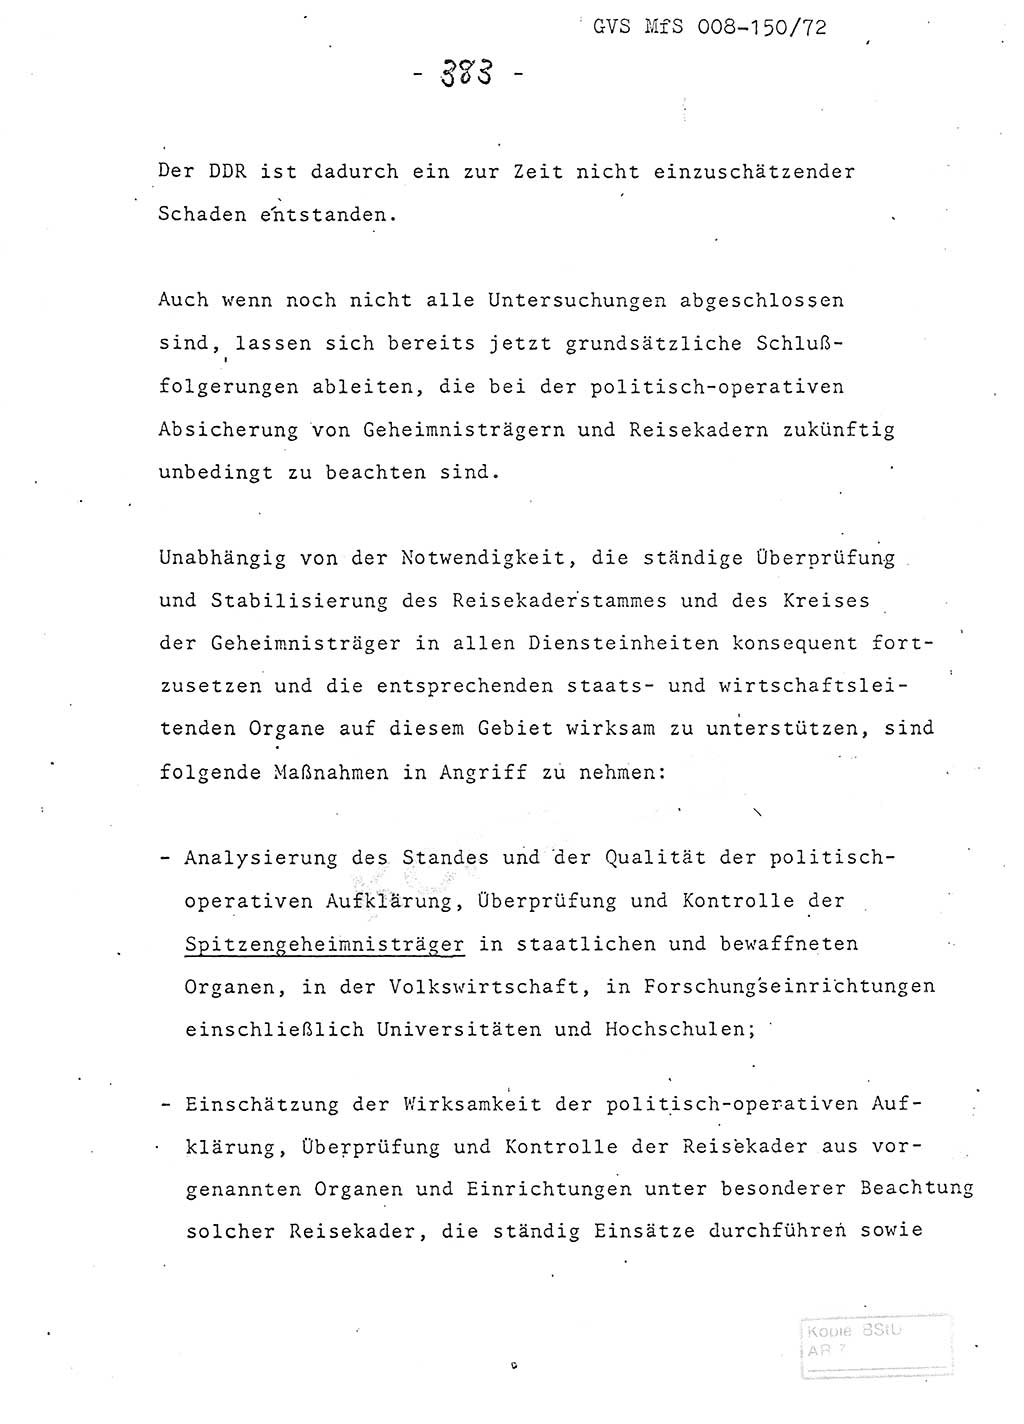 Referat (Entwurf) des Genossen Minister (Generaloberst Erich Mielke) auf der Dienstkonferenz 1972, Ministerium fÃ¼r Staatssicherheit (MfS) [Deutsche Demokratische Republik (DDR)], Der Minister, Geheime VerschluÃŸsache (GVS) 008-150/72, Berlin 25.2.1972, Seite 383 (Ref. Entw. DK MfS DDR Min. GVS 008-150/72 1972, S. 383)